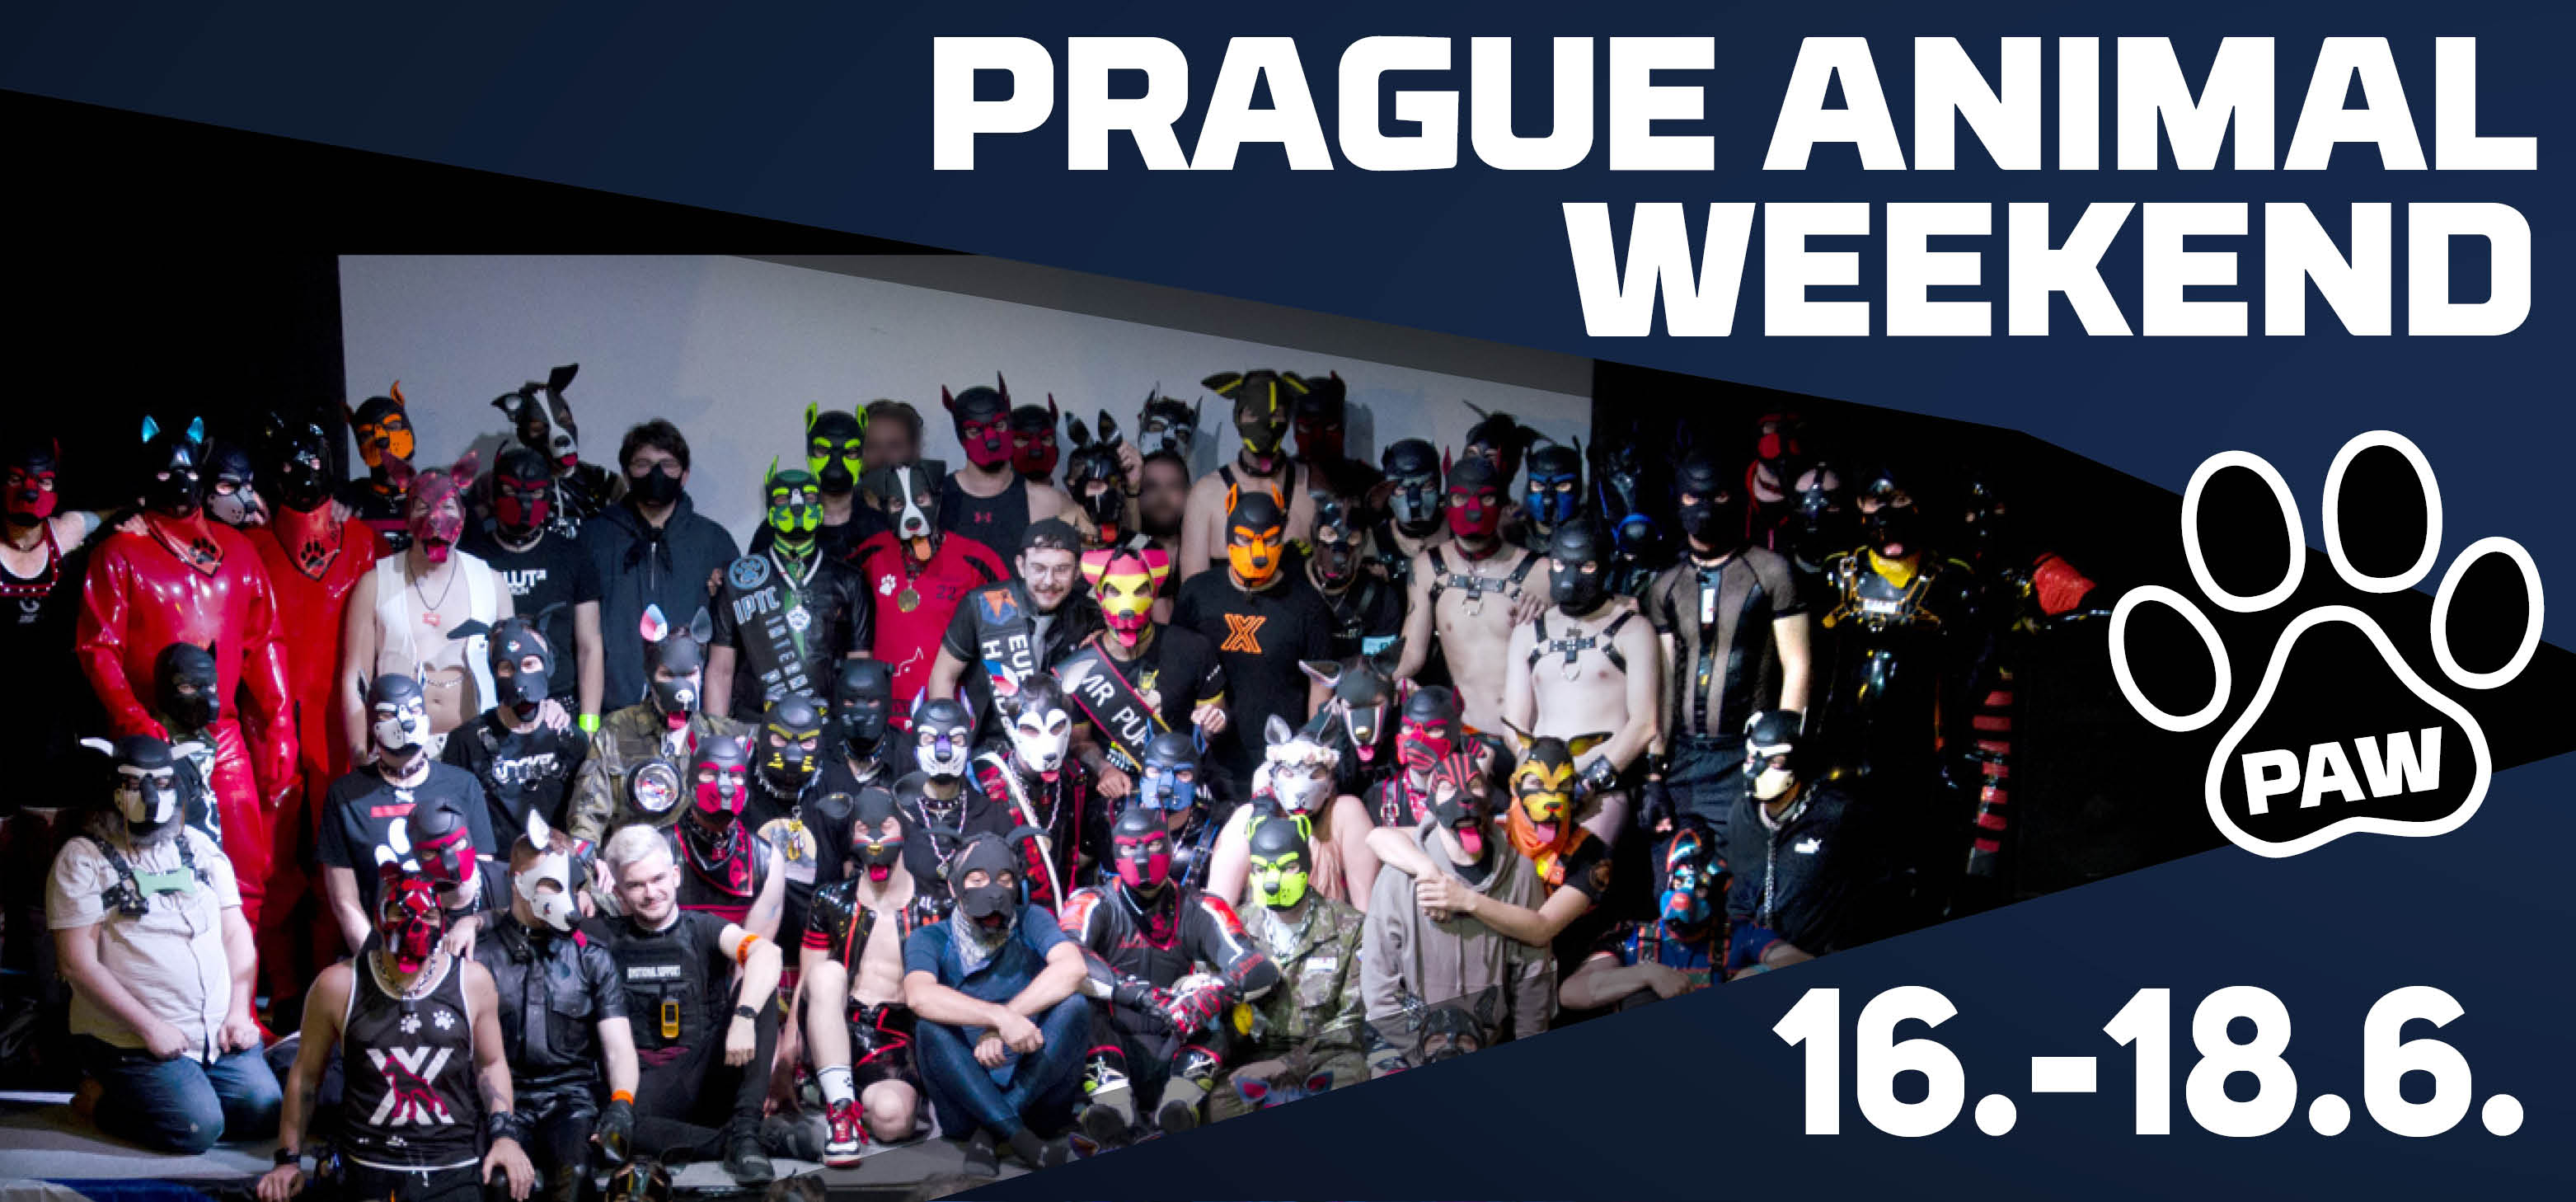 Prague Animal Weekend - 16. - 18. 6. 